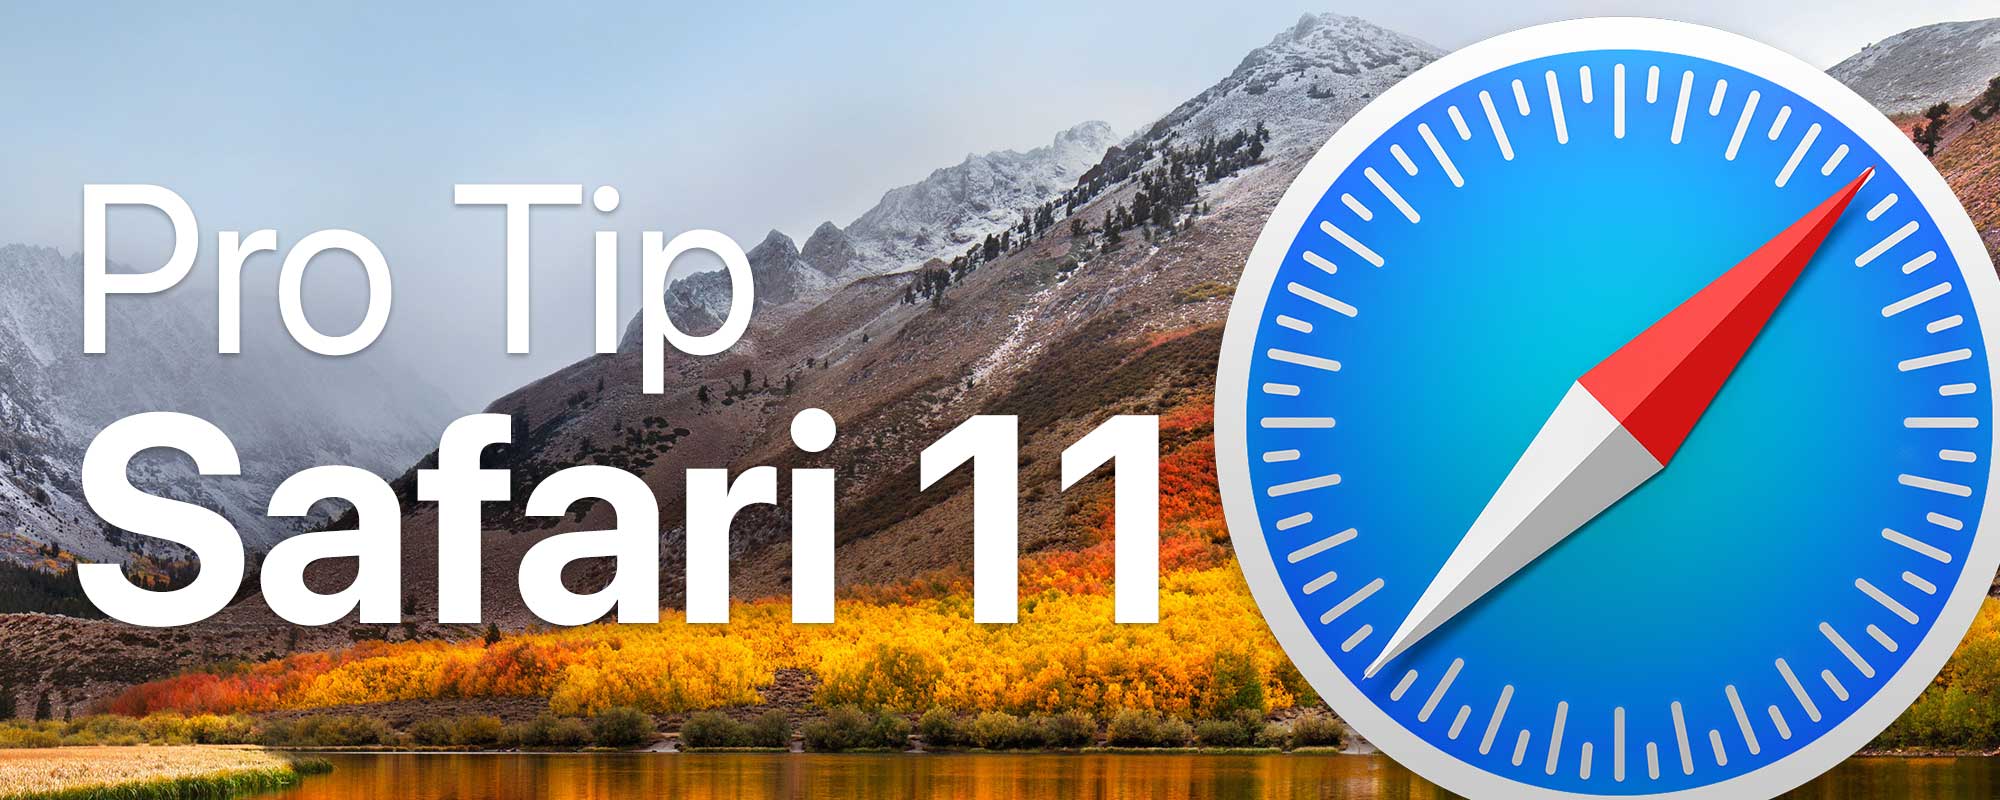 Safari Pro Tip Featured Image